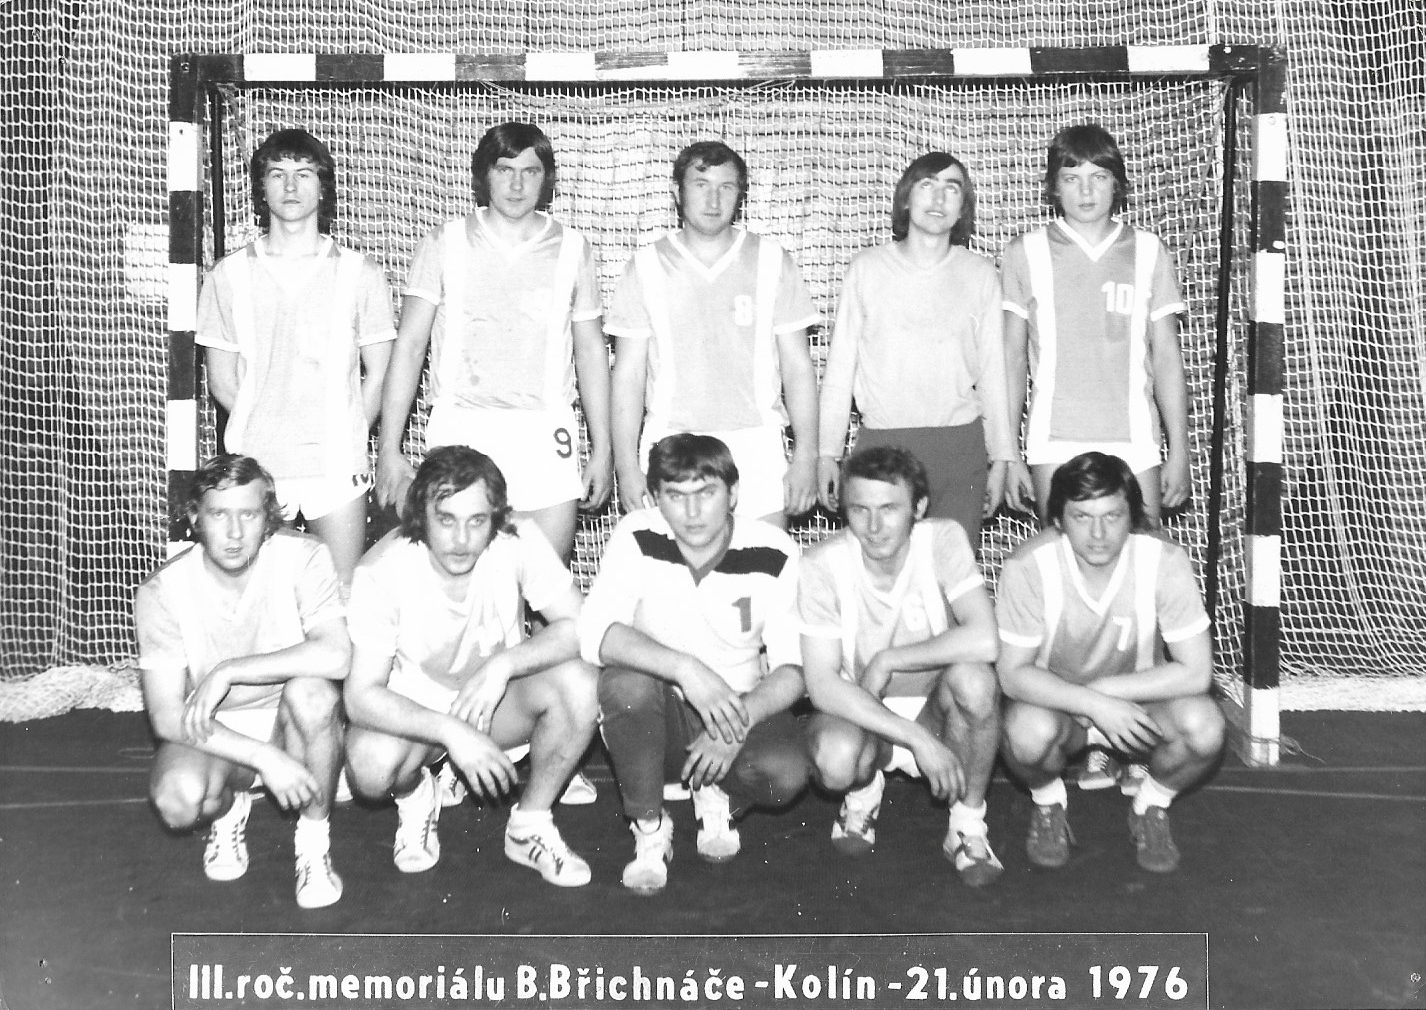 Družstvo mužů na turnaj v Kolíně 1976: Stojící zleva: Cehák, Křížek, Dušek, Paulus, Schneider. Klečící zleva: V.Šanda, Štěpánek, Švec, Cibulka, J.Urban